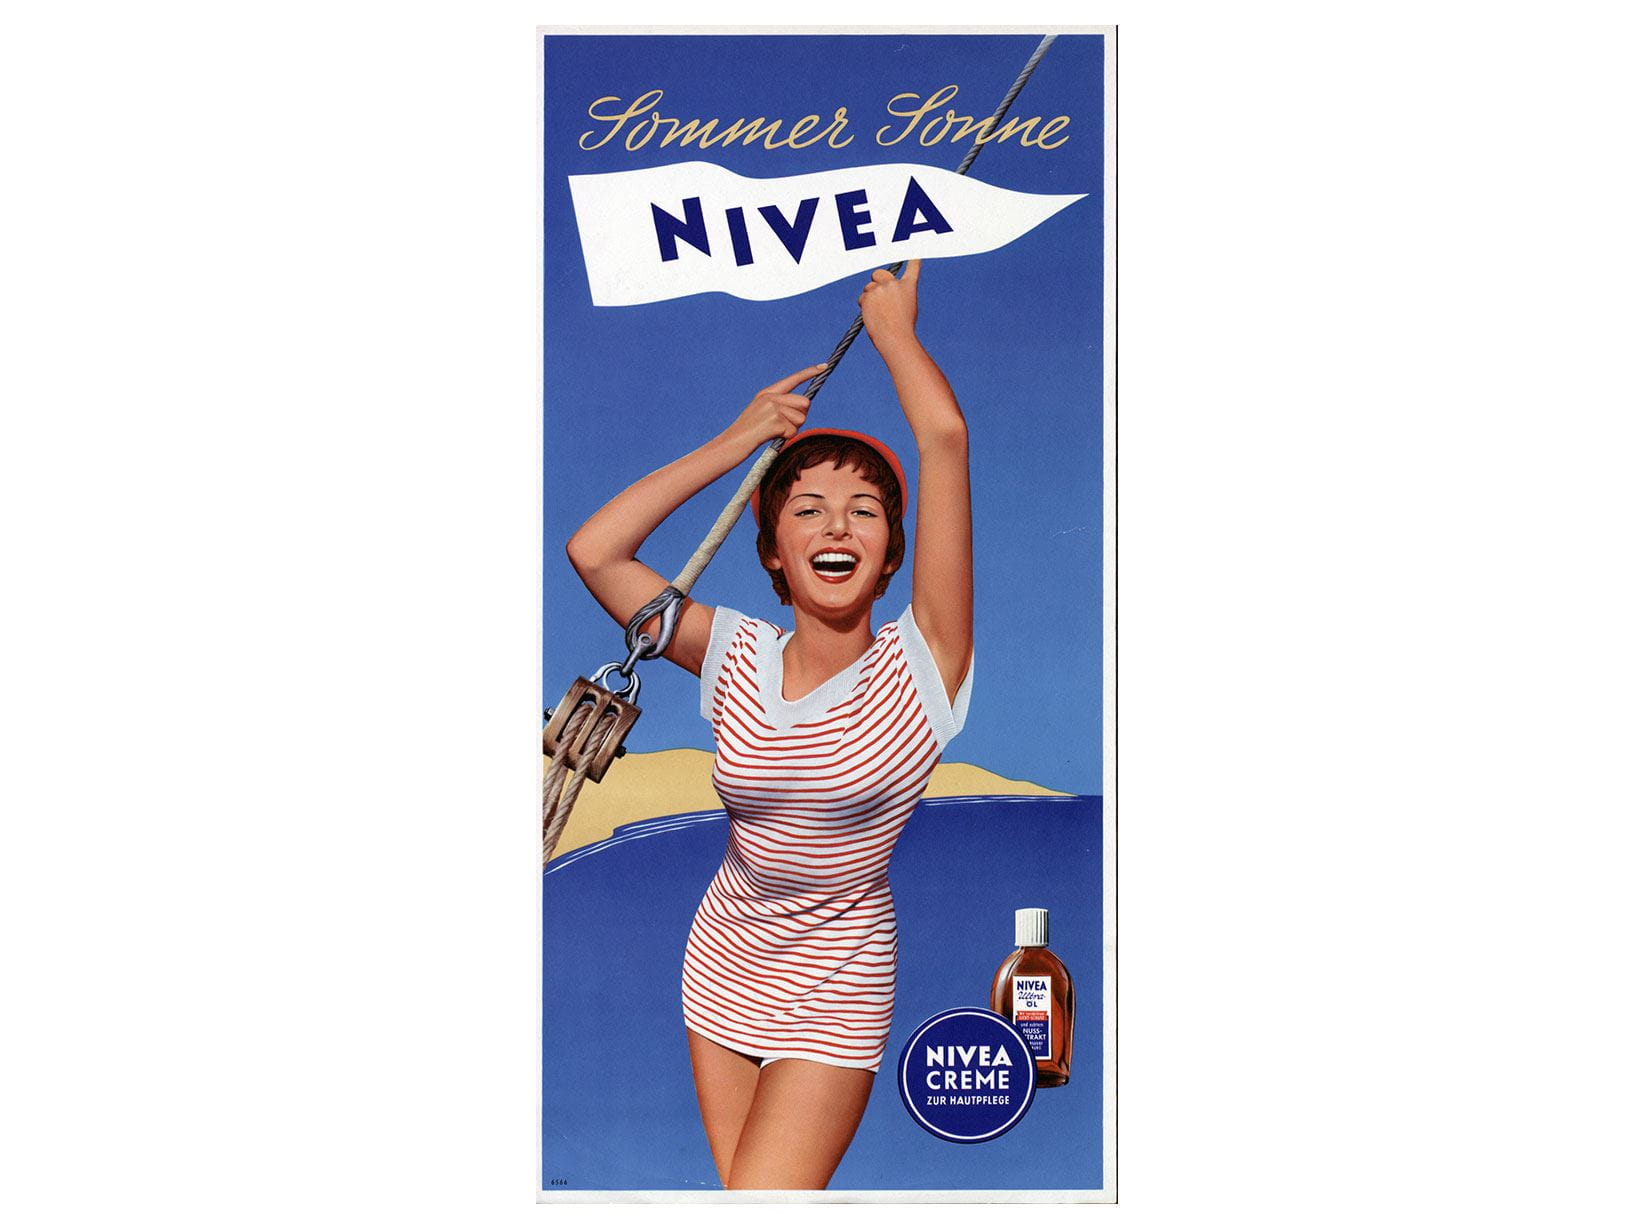 NIVEA Werbeplakat von 1955: Sommer Sonne NIVEA